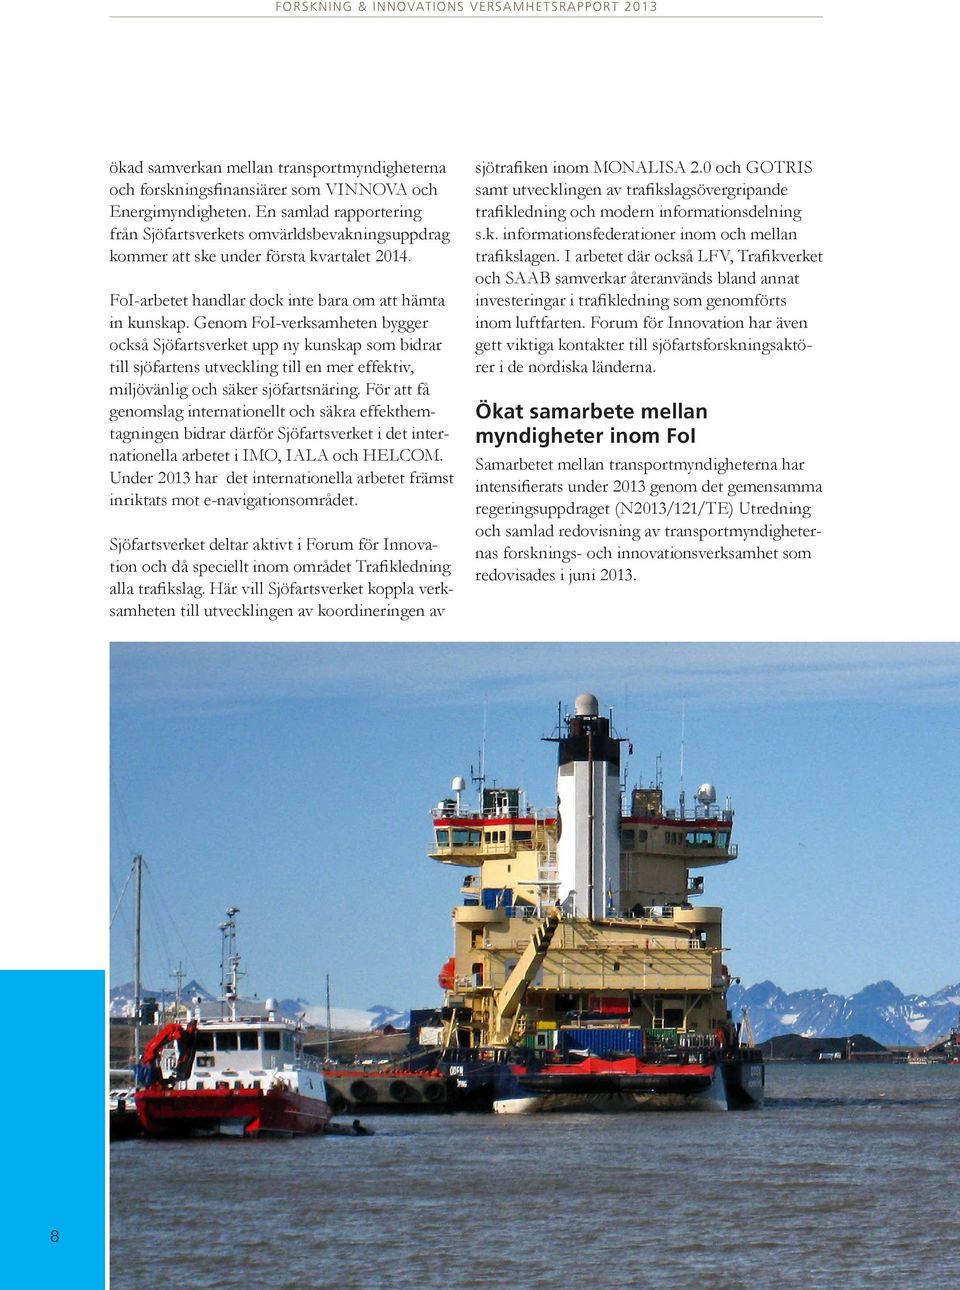 Genom FoI-verksamheten bygger också Sjöfartsverket upp ny kunskap som bidrar till sjöfartens utveckling till en mer effektiv, miljövänlig och säker sjöfartsnäring.